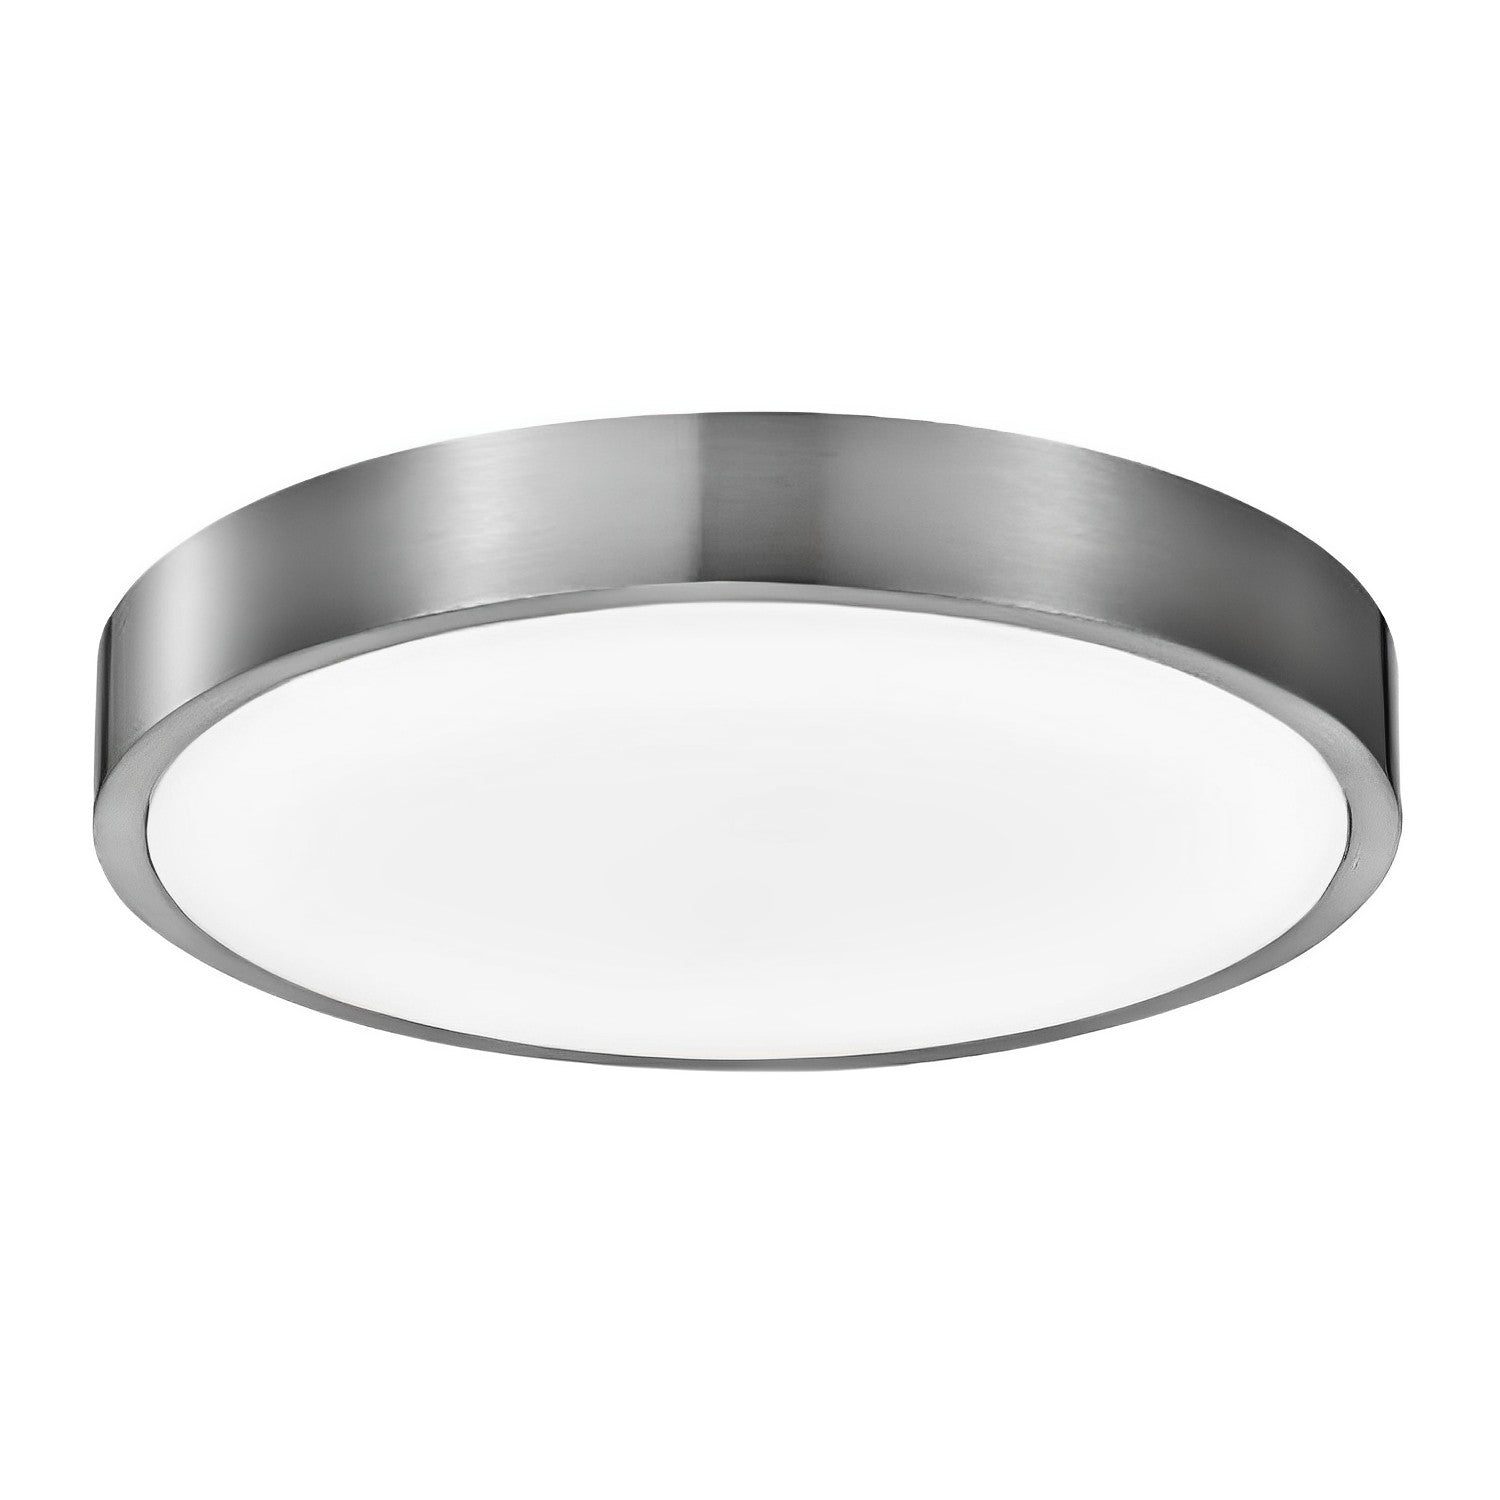 Main Image of round led ceiling light led ceiling light led ceiling light fixture